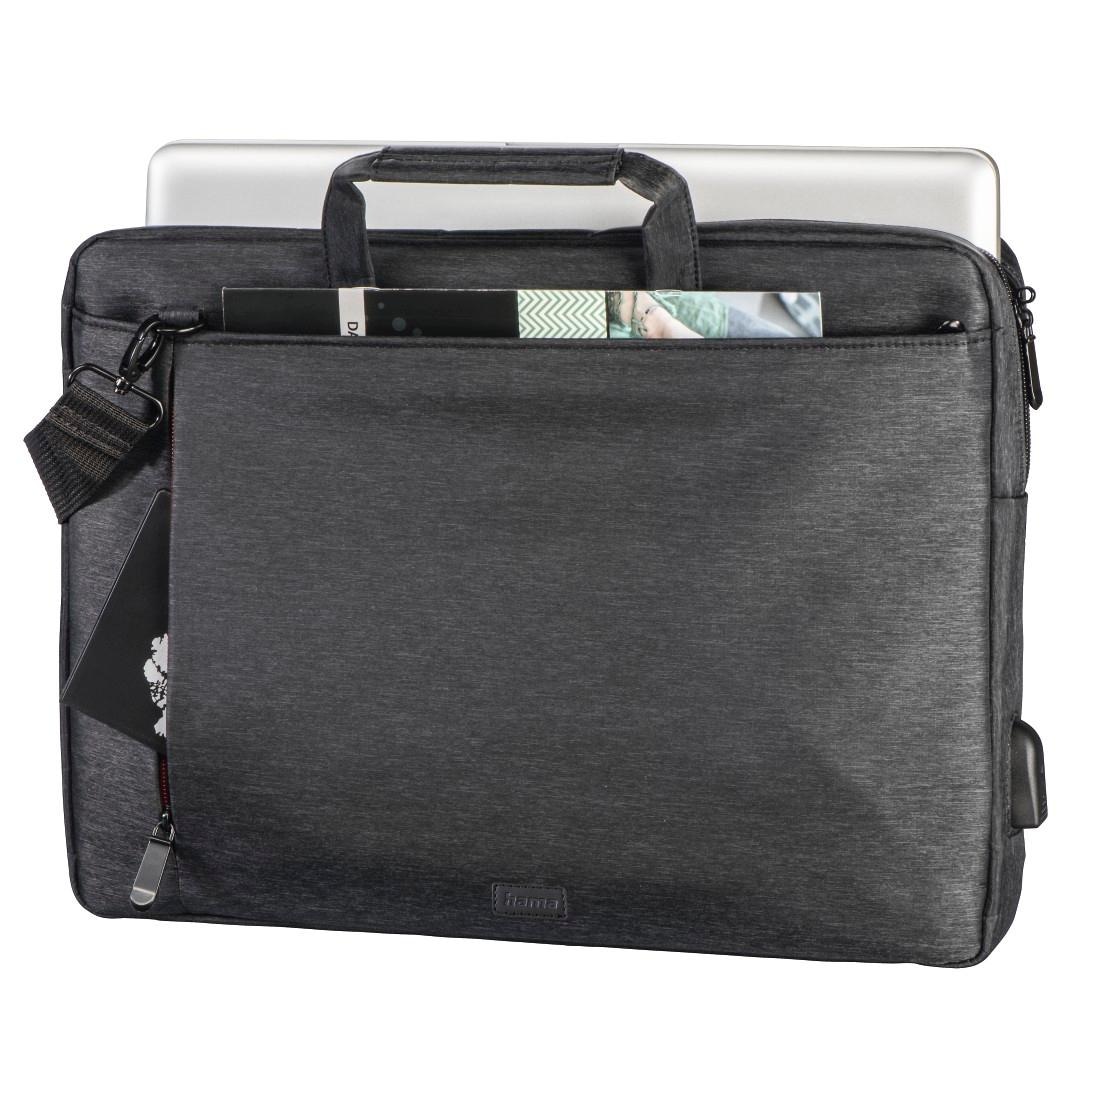 Hama Laptoptasche »Notebook Tasche bis 34 cm (13,3 Zoll), Farbe Schwarz, modisches Design«, Mit Tabletfach, Vordertaschen, Organizerstruktur, Trolleyband,USB-Port